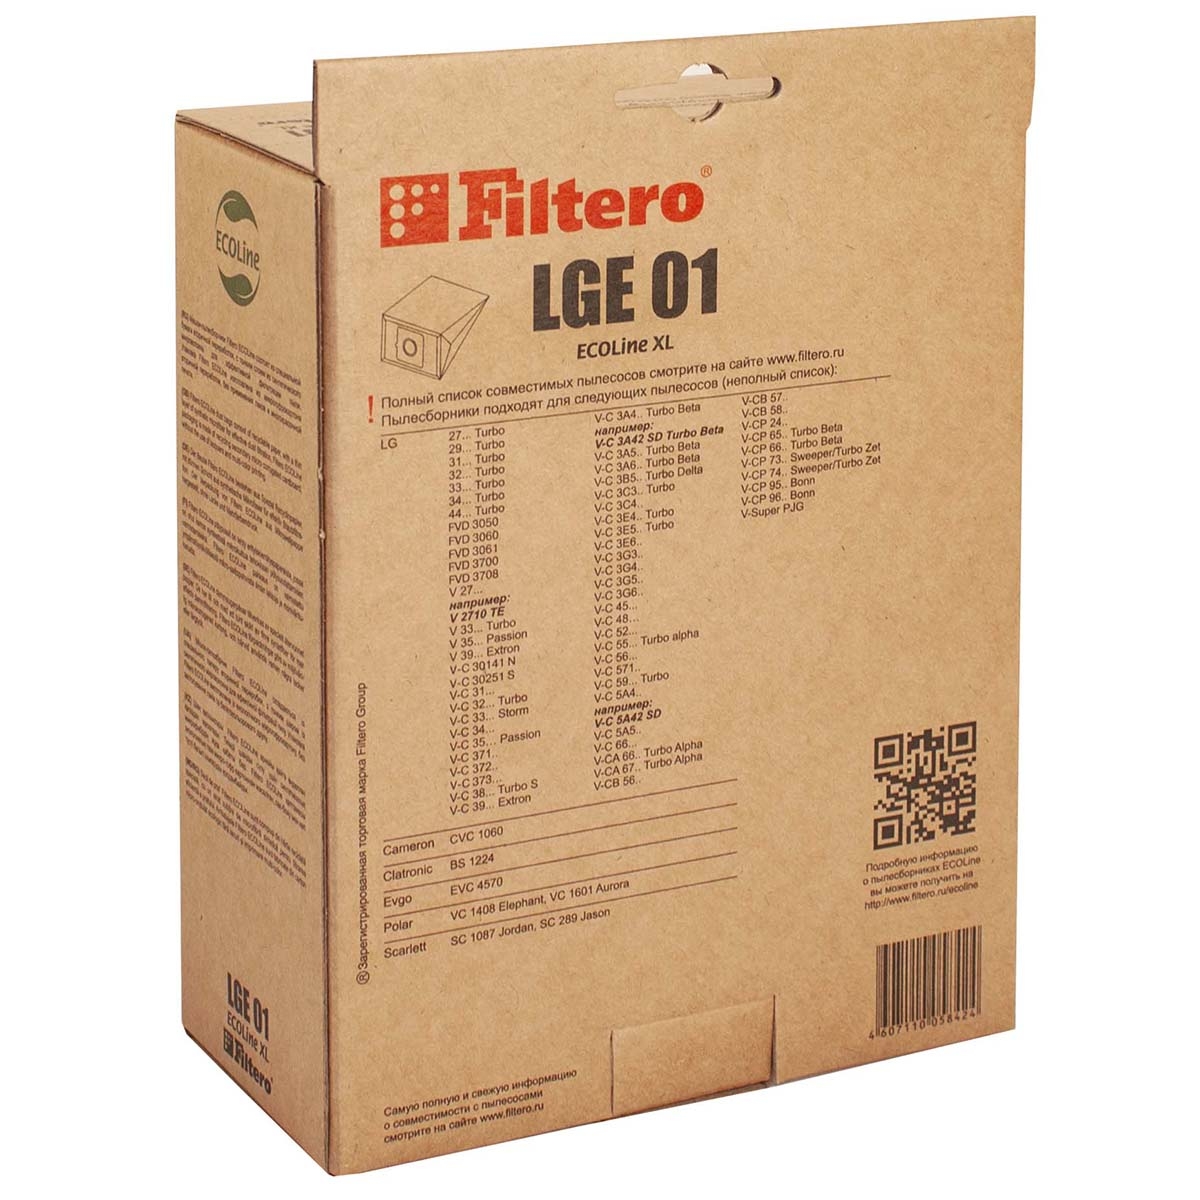 Filtero Пылесборники LGE 01 (10+фильтр) ECOLine XL